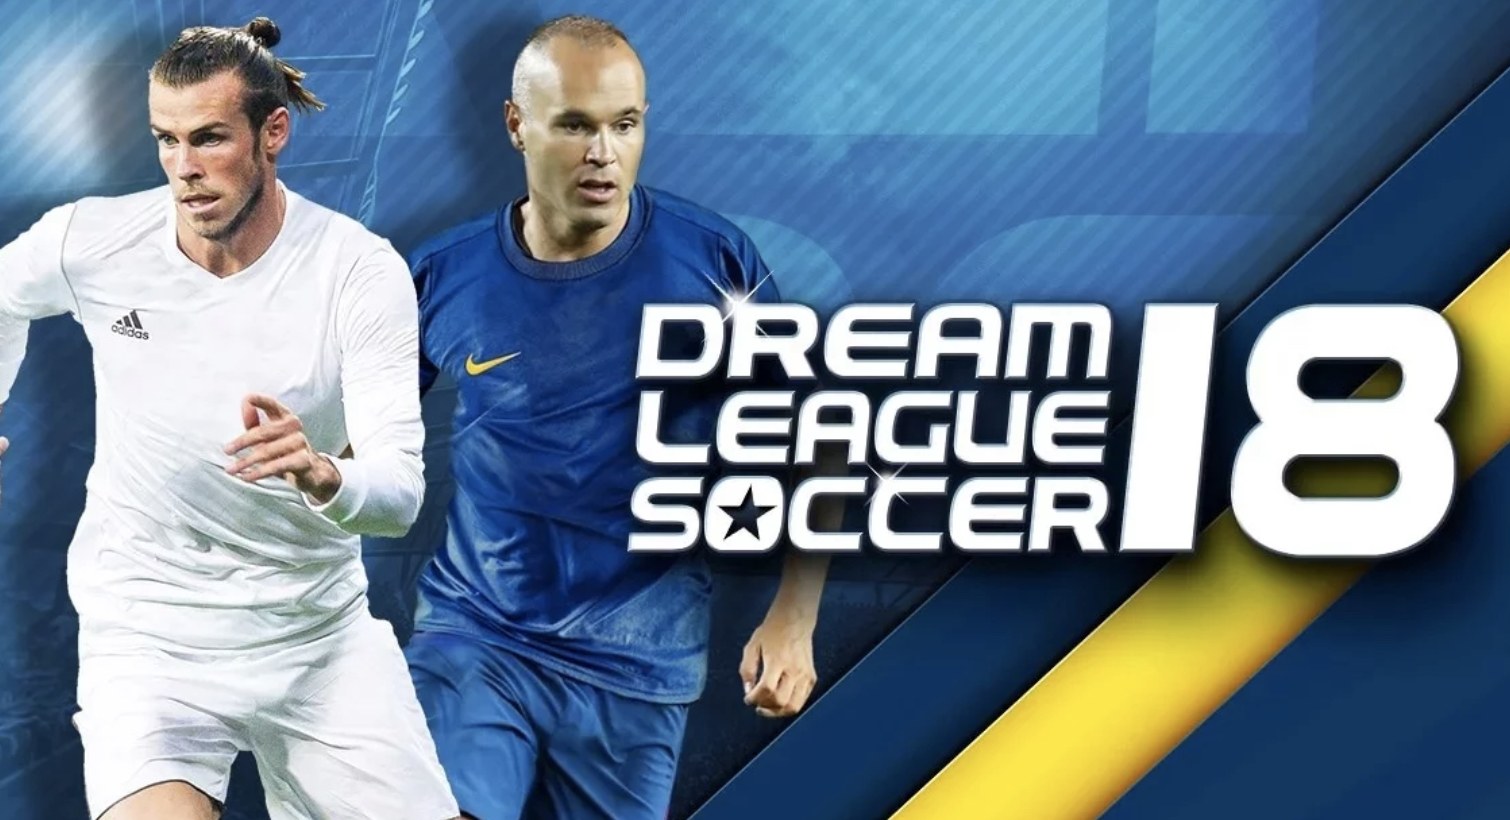 dream league soccer 18 download